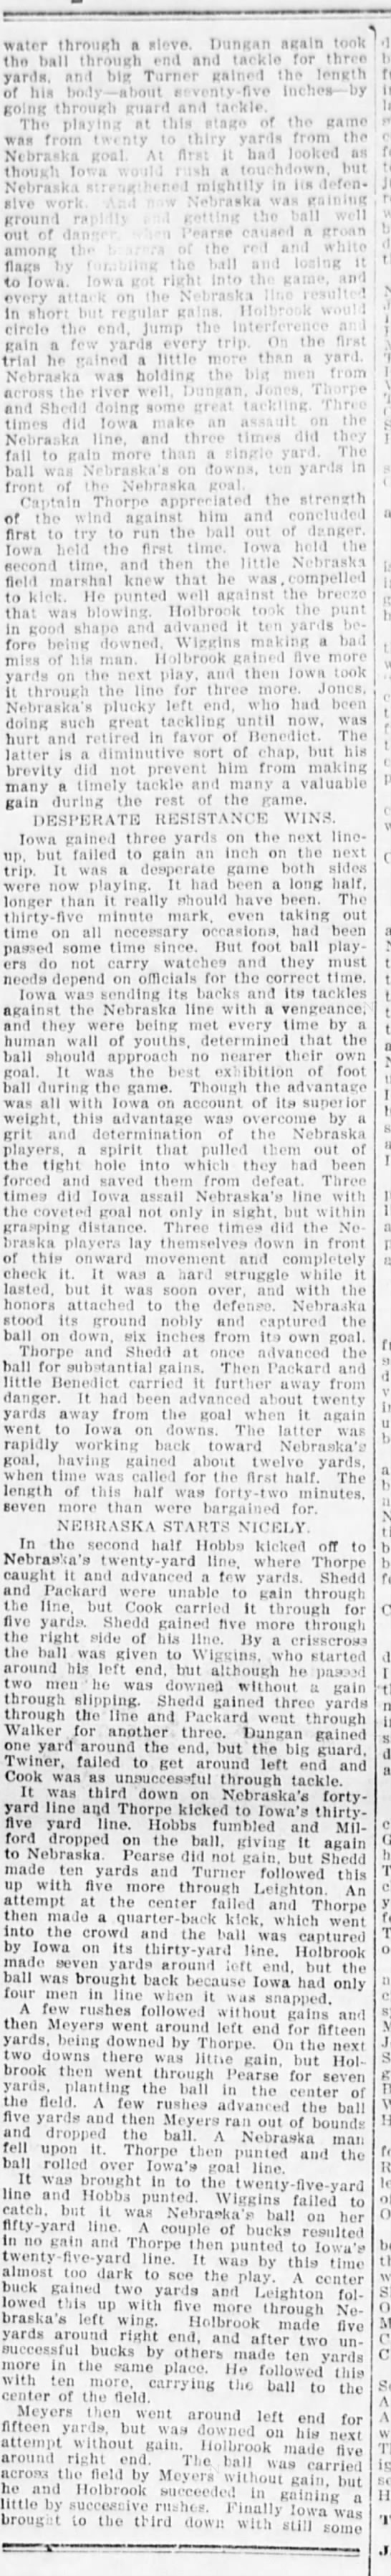 1896 Nebraska Iowa football Omaha Bee 2 - 